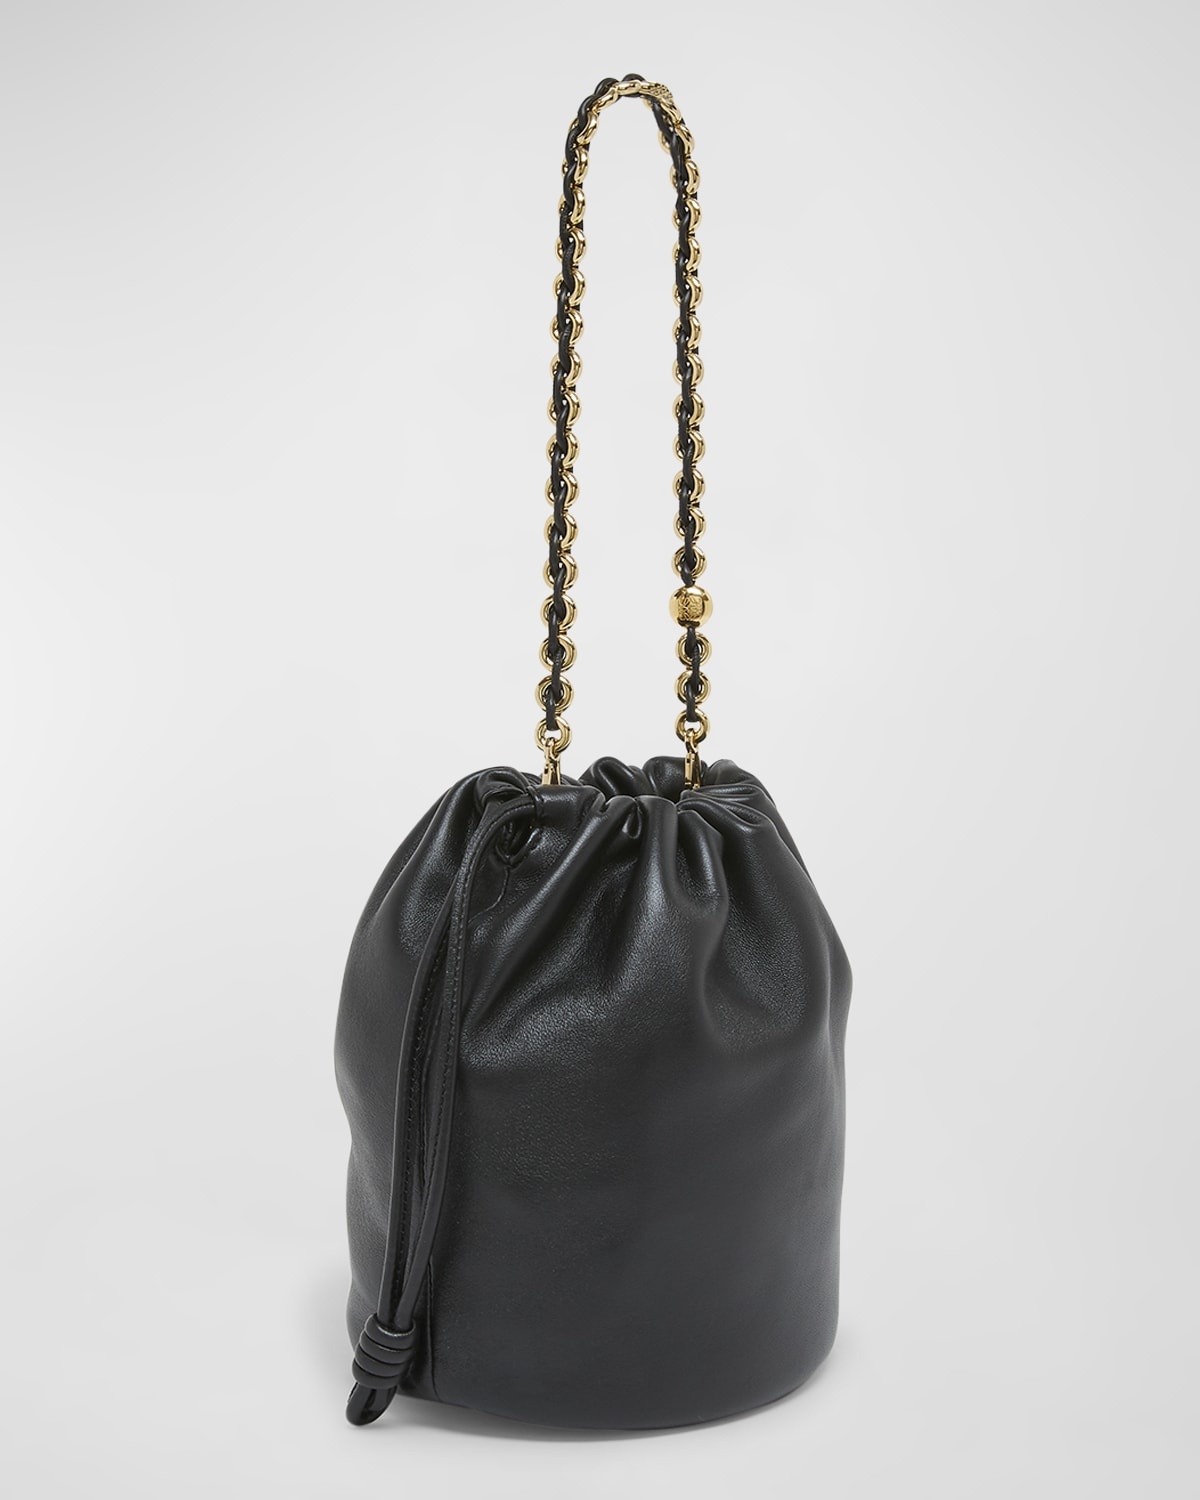 x Paula’s Ibiza Flamenco Bucket Bag in Napa Leather with Chain - 6